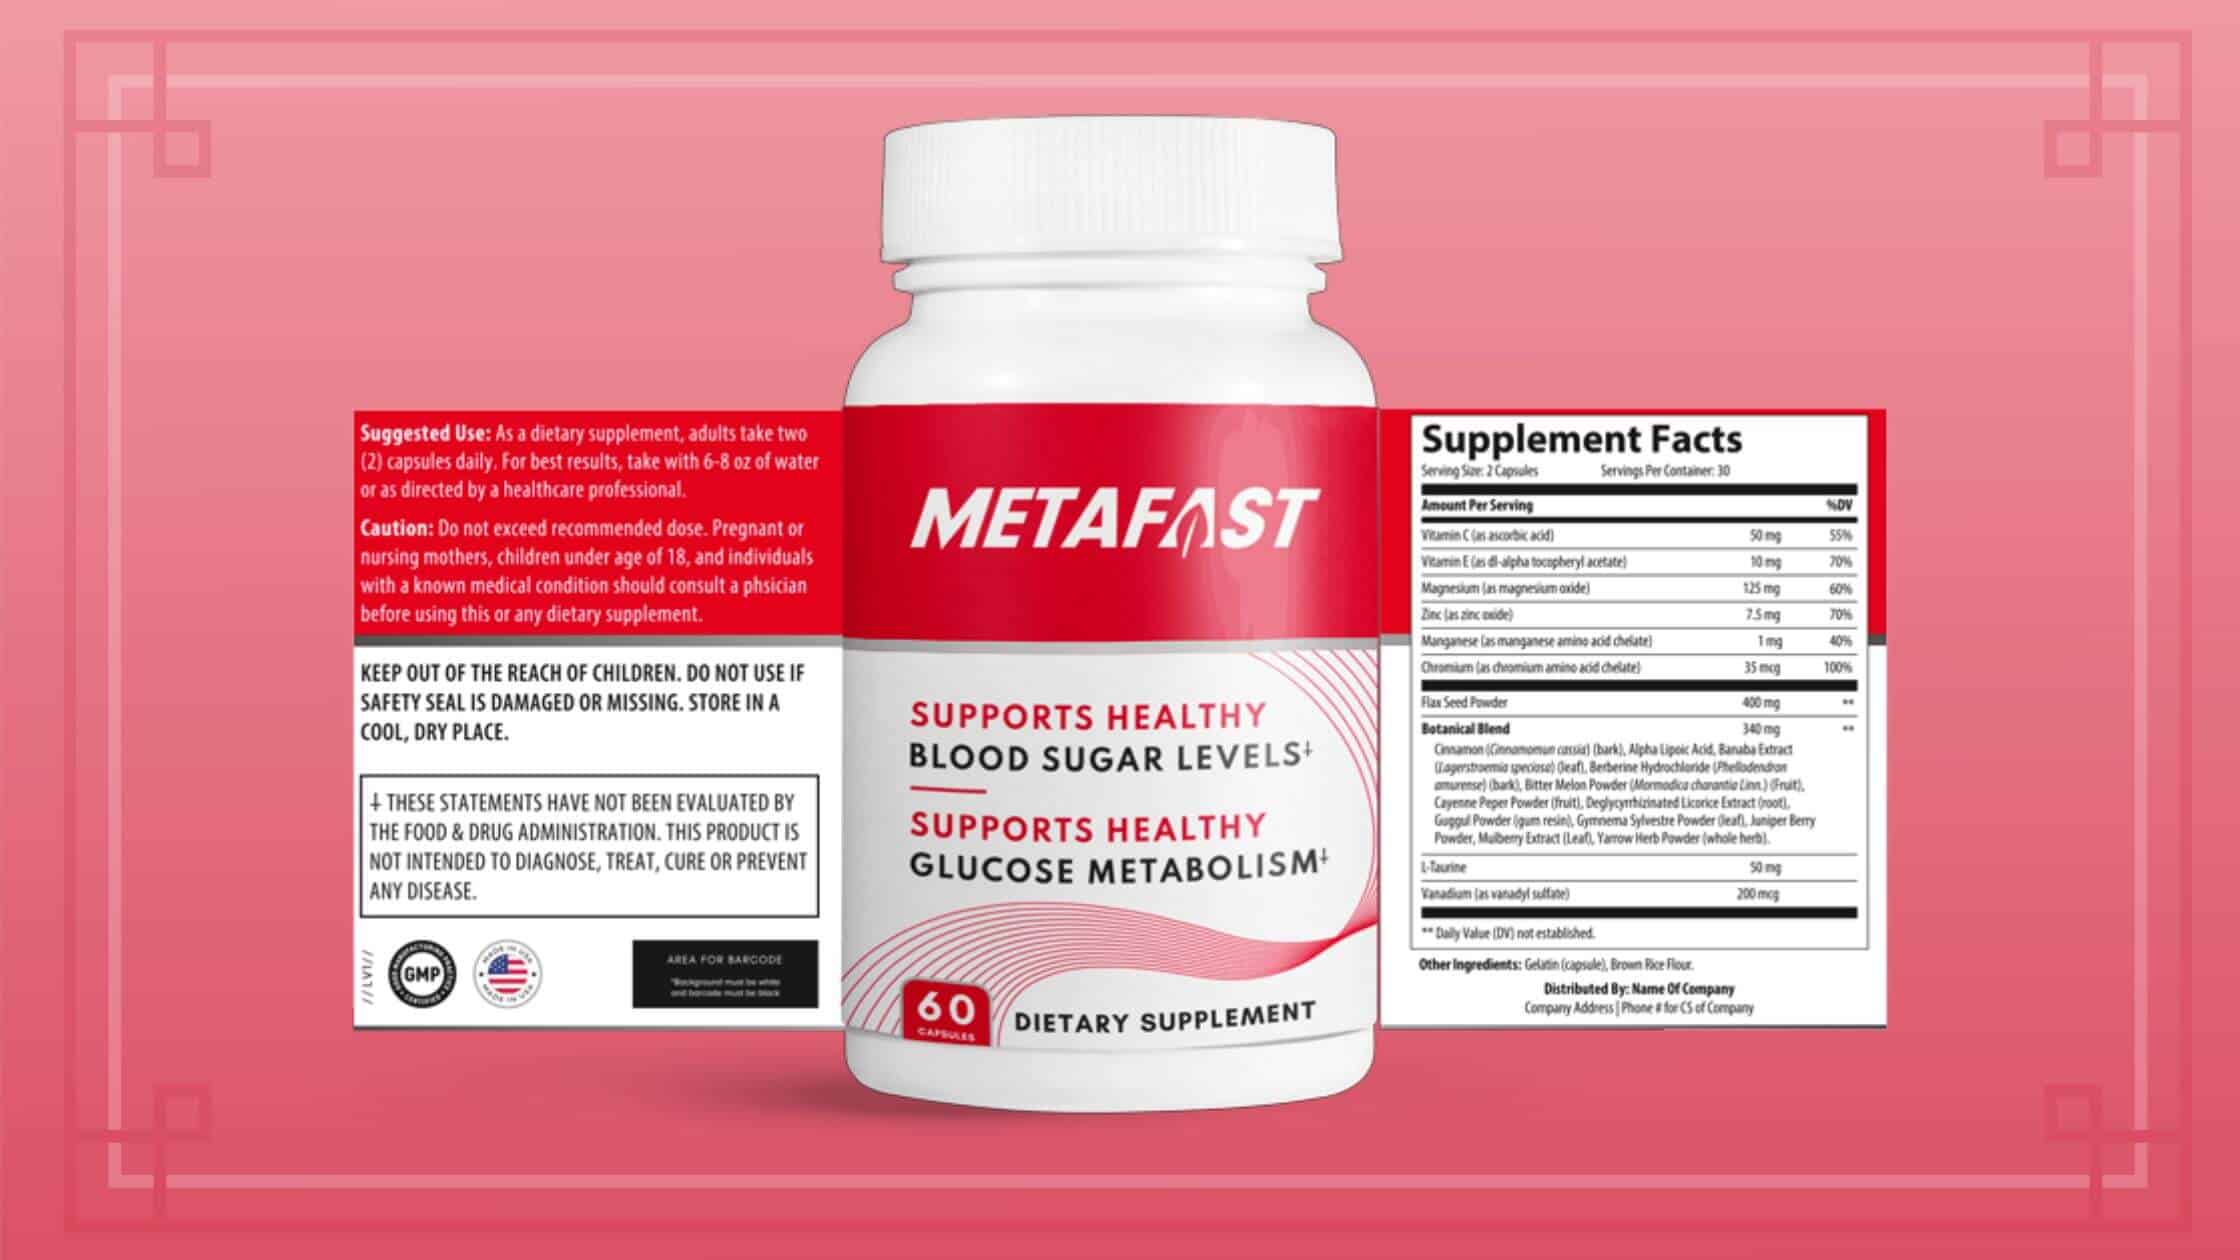 Metafast Supplement Facts